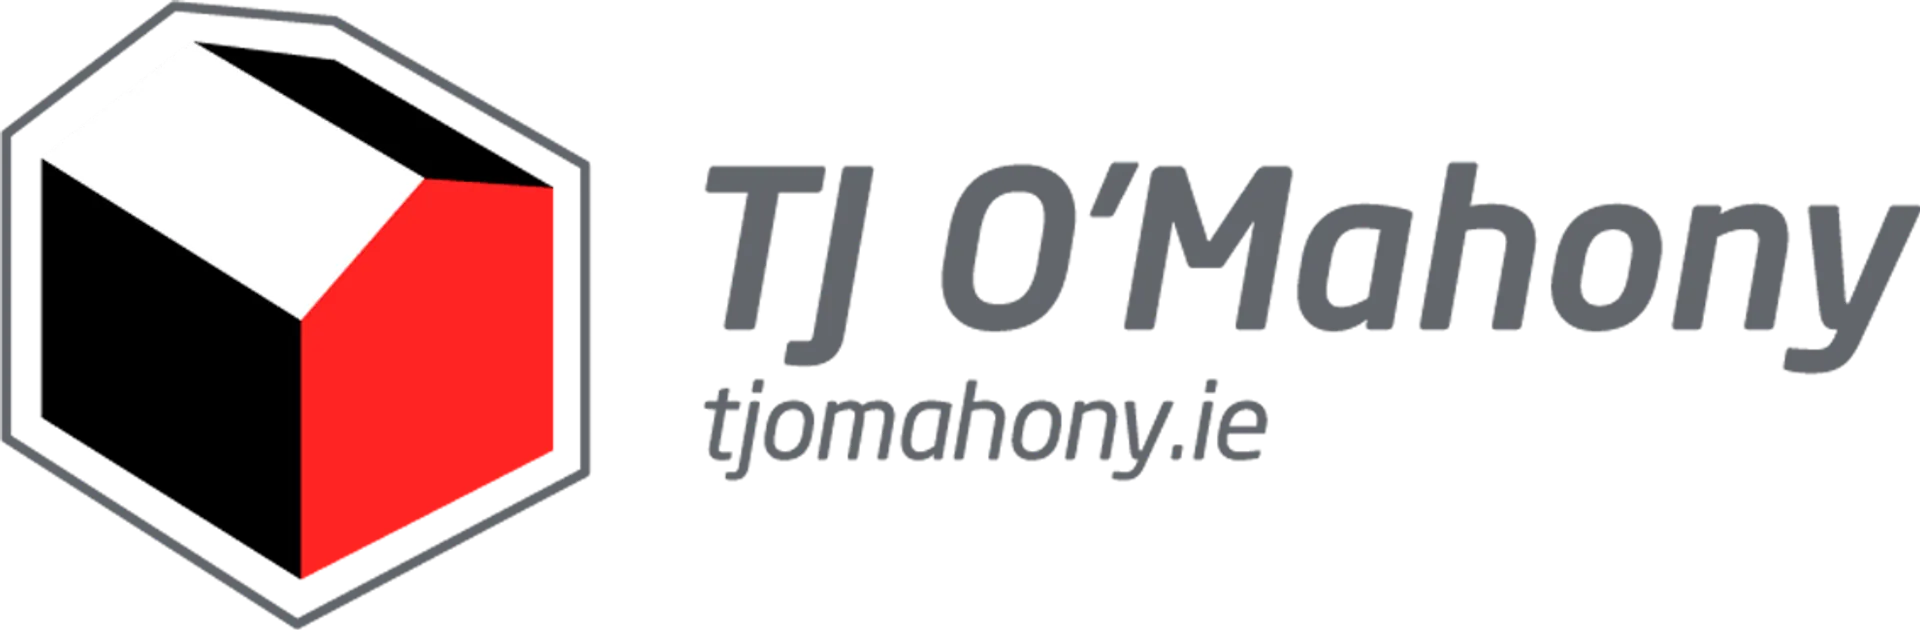 TJ O'MAHONY logo